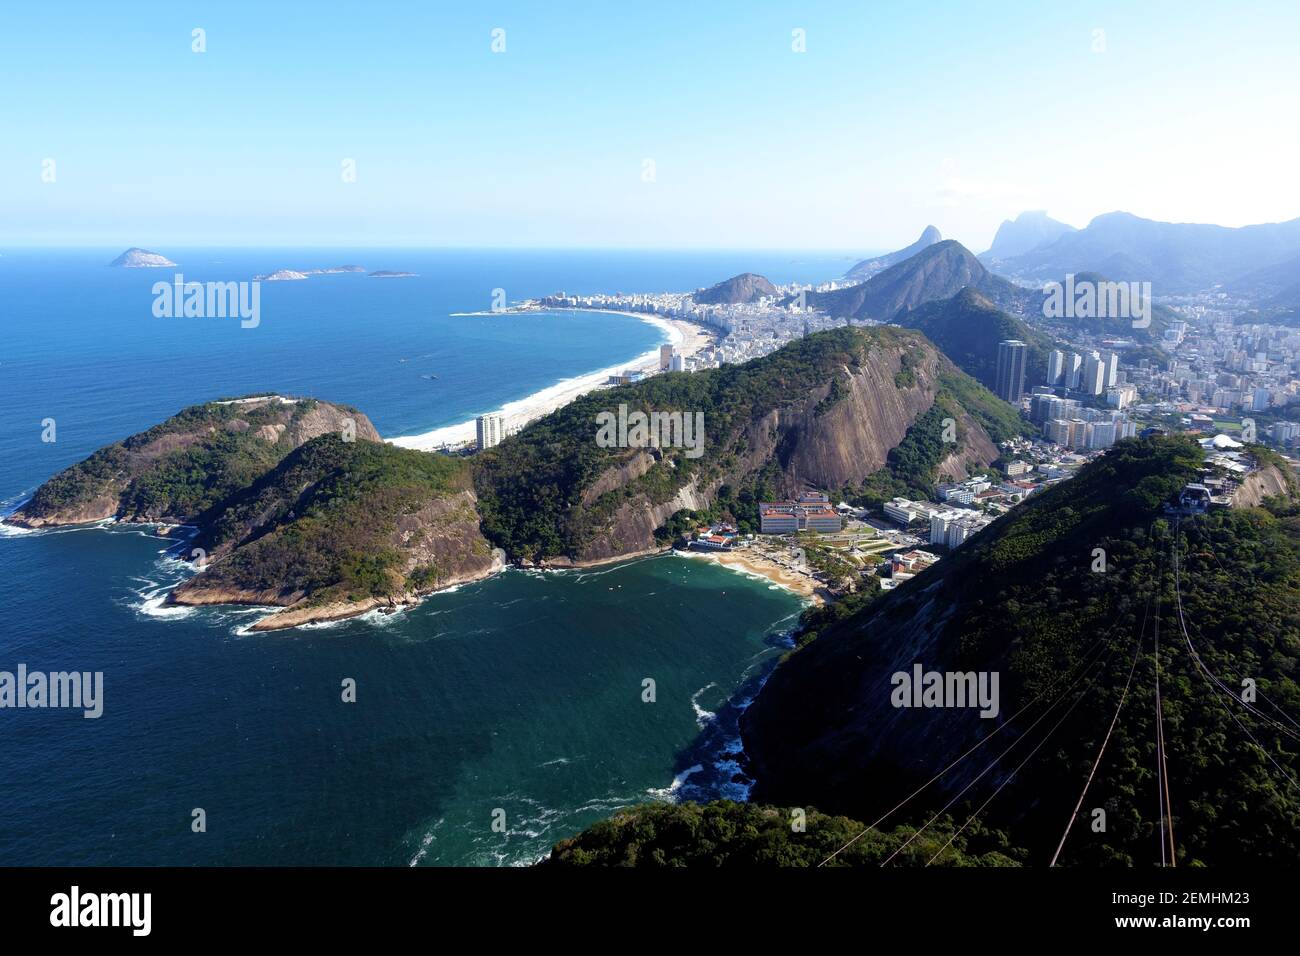 Vista dalla cima del Pan di zucchero a Rio de Janeiro, in Brasile, che mostra il lungo tratto della spiaggia di Copacabana e il Foto Stock